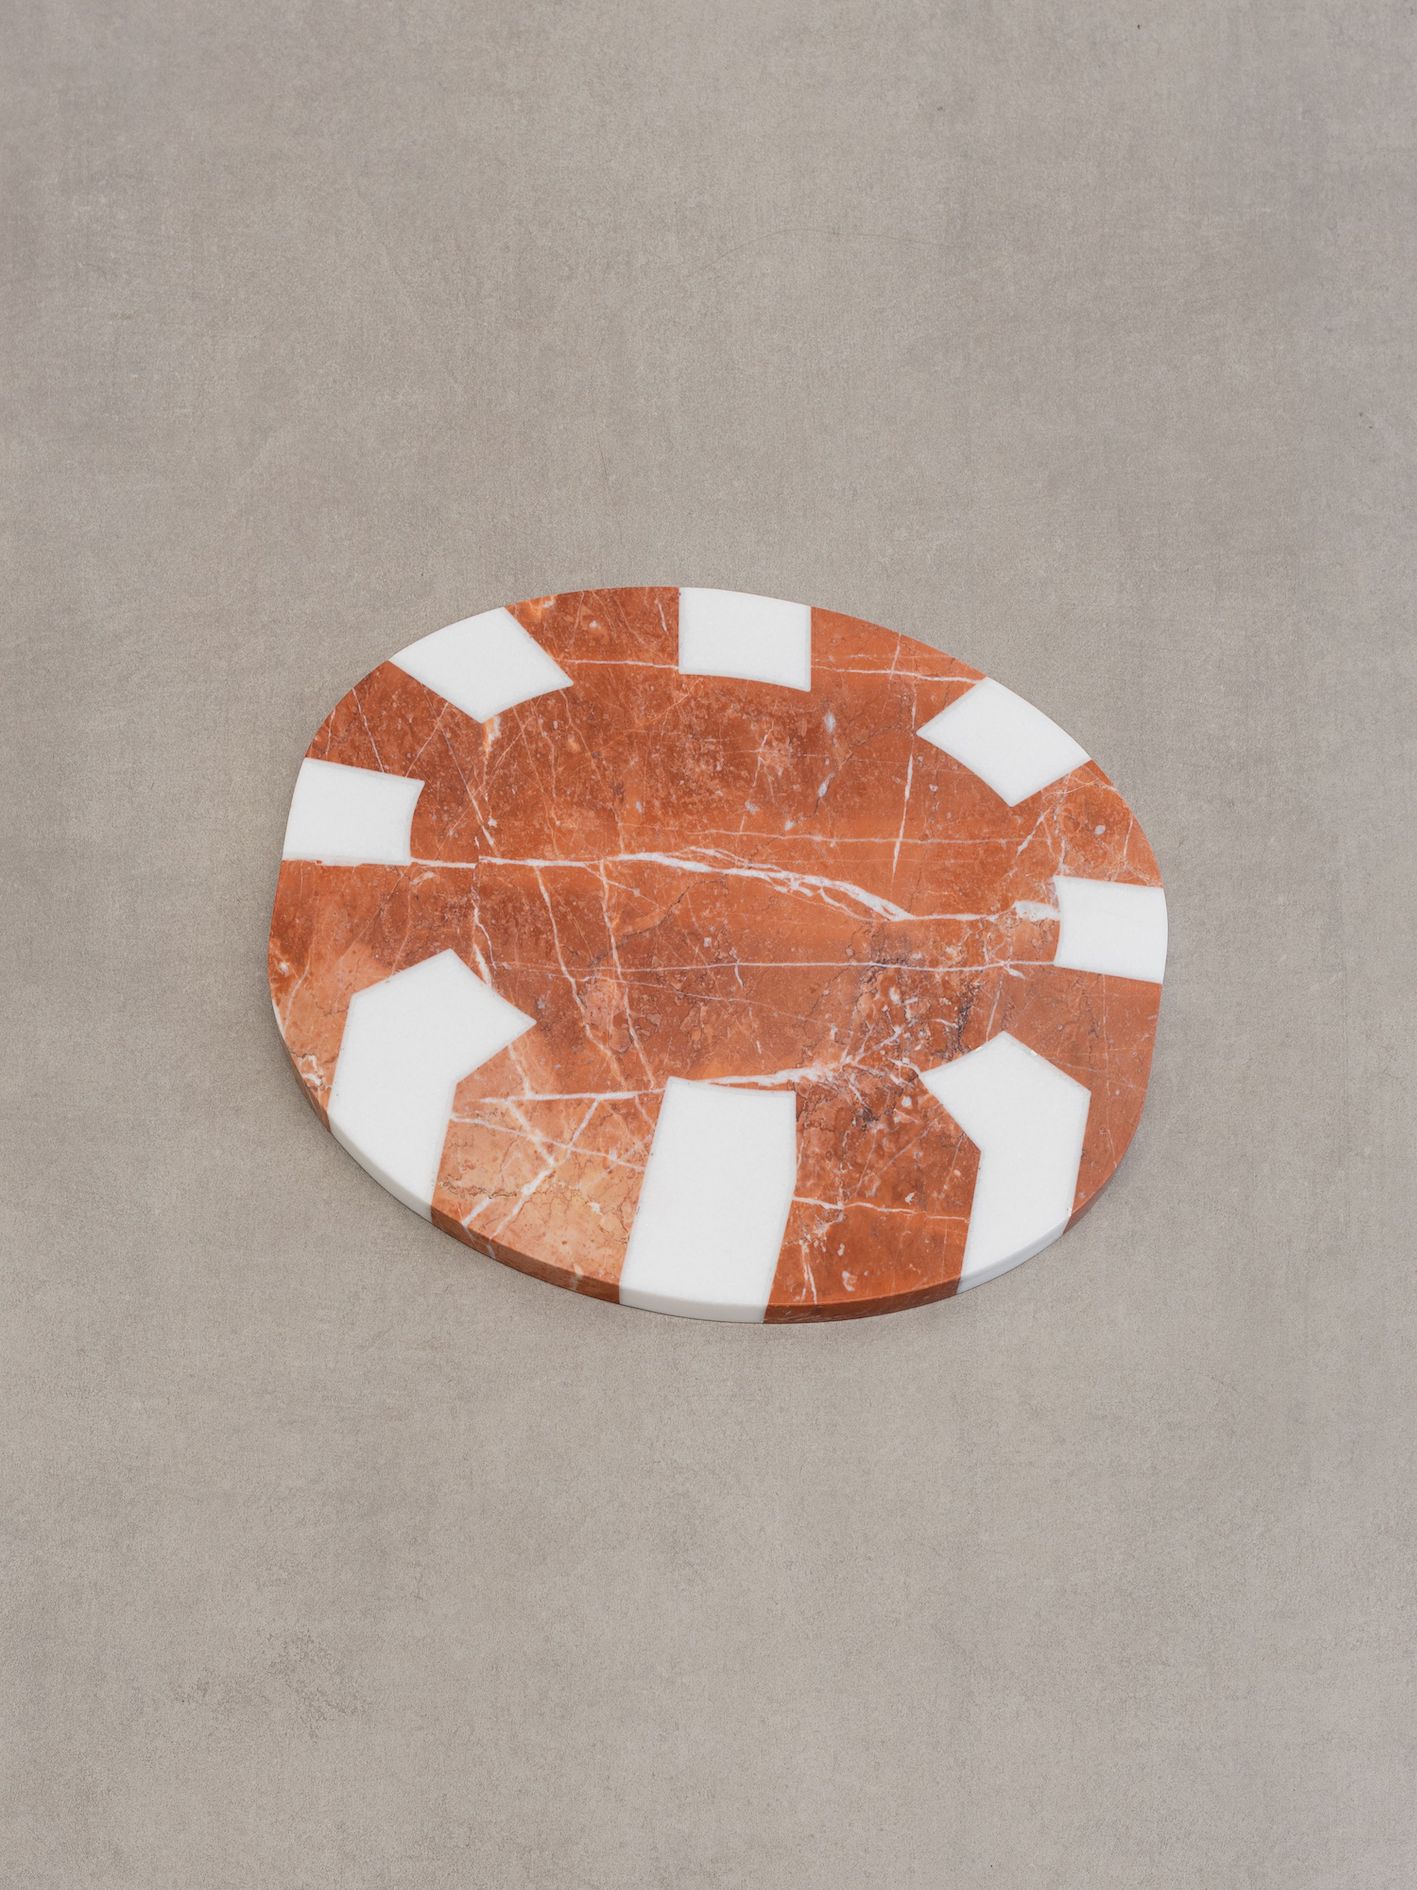 Vasilis Papageorgiou, 2800 €, 2019, marmo rosso intarsiato con marmo bianco, cm 40 x 33 x 2